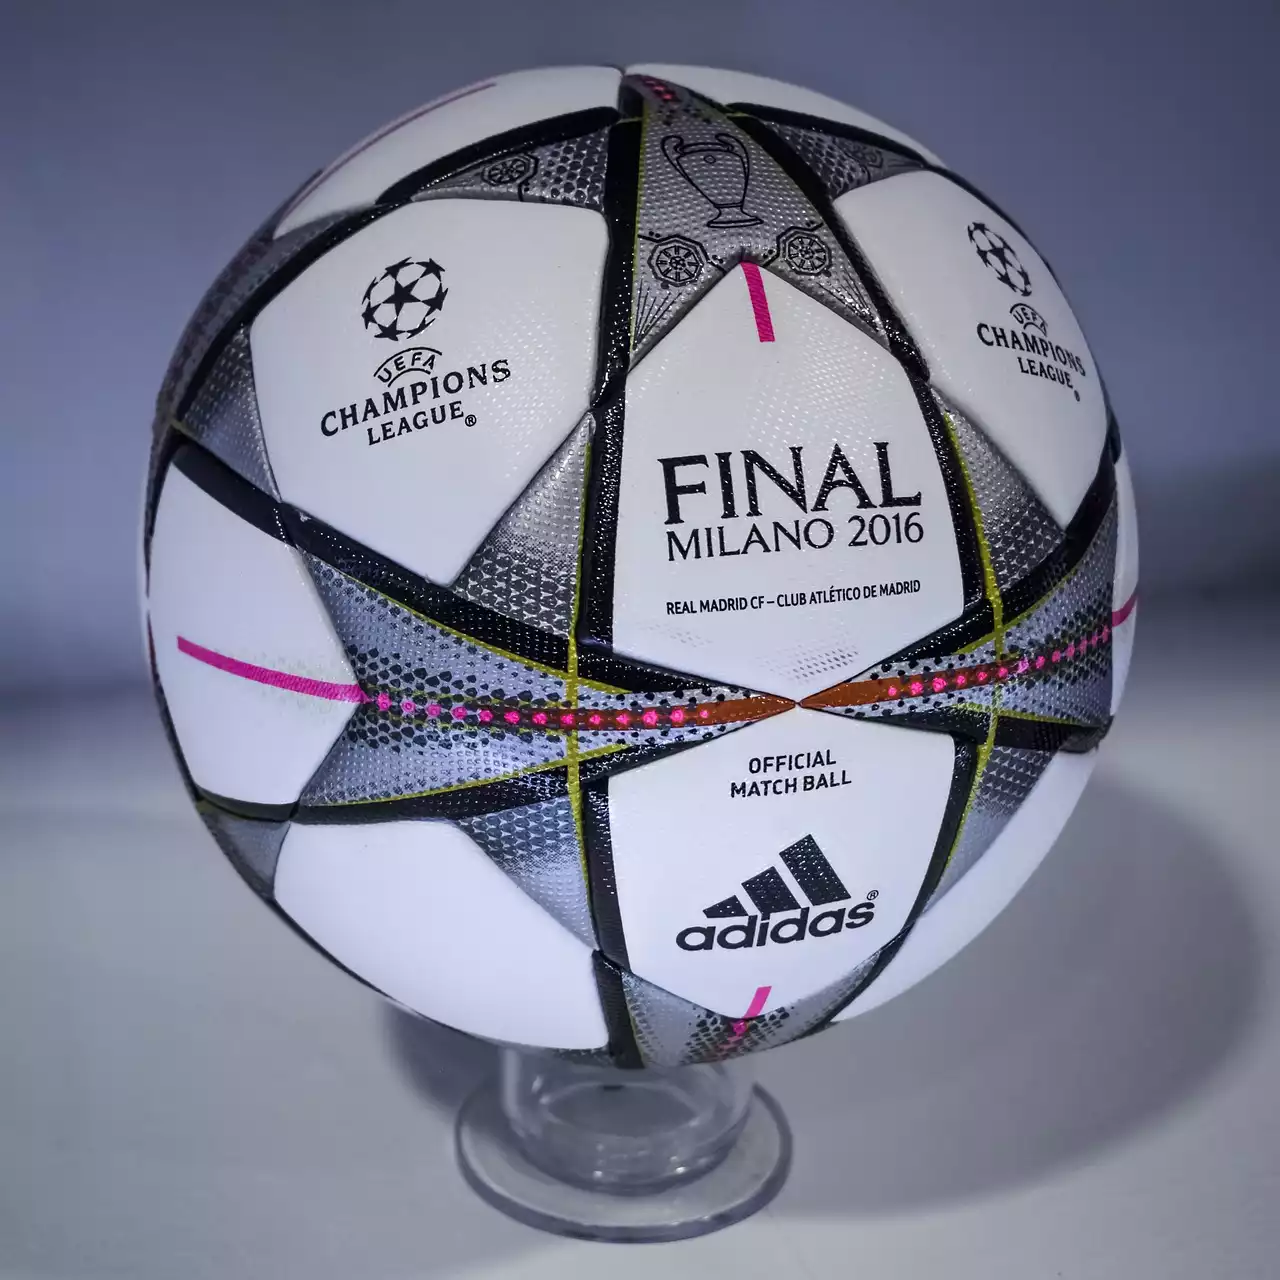 Een overzicht van de UEFA Champions League-competitie